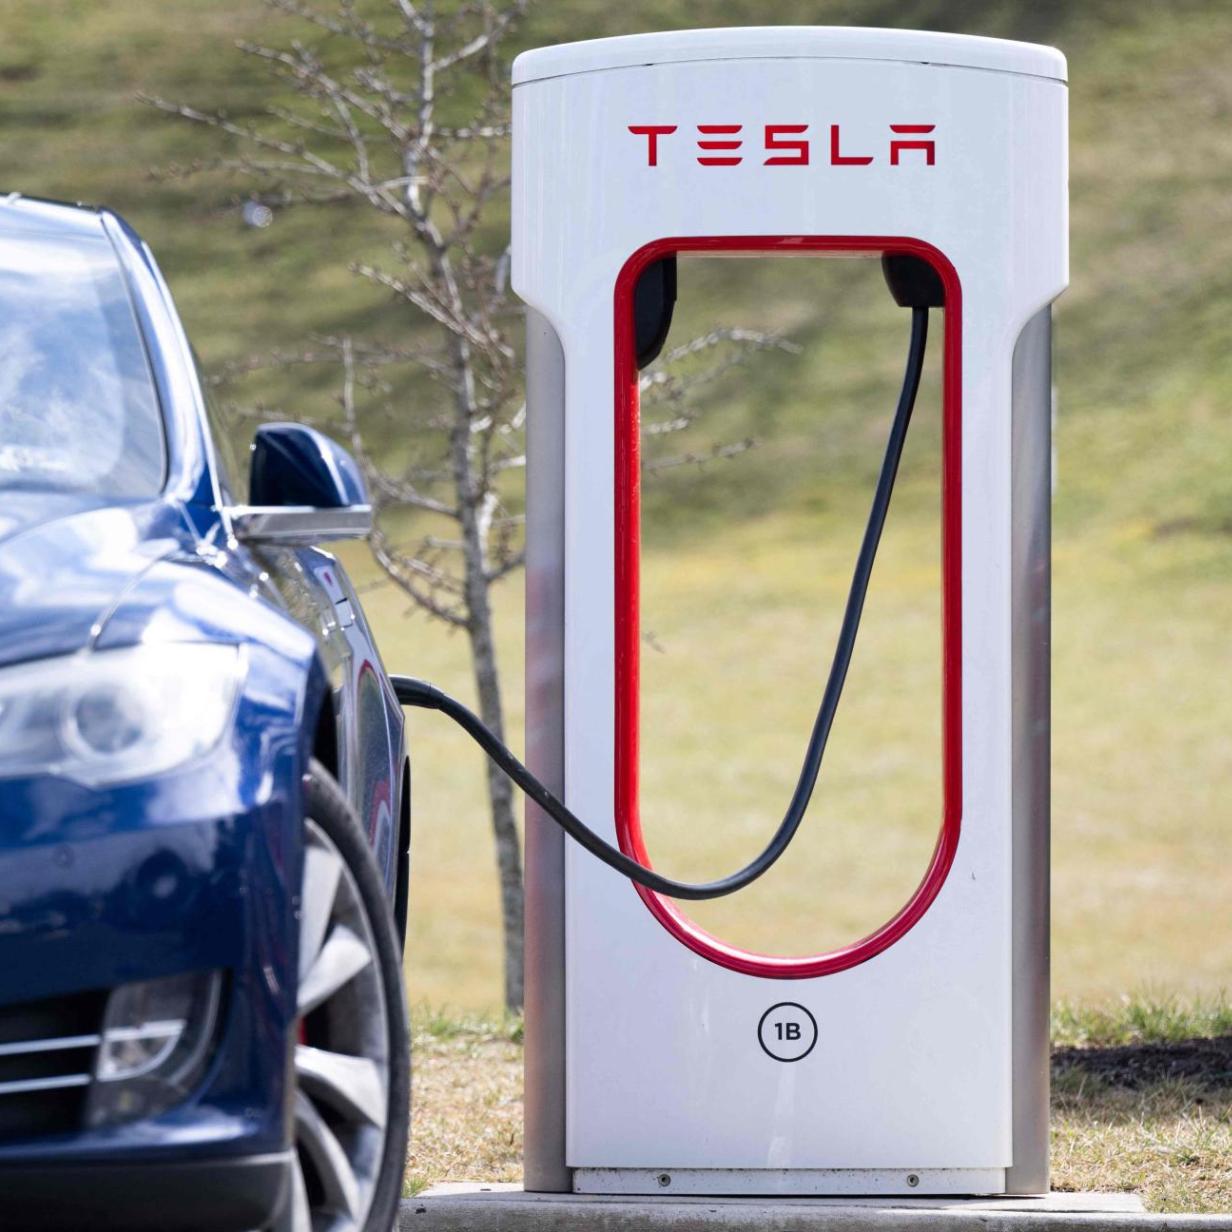 Tesla stellt sein Supercharger-Netz Ford zur Verfügung - Business